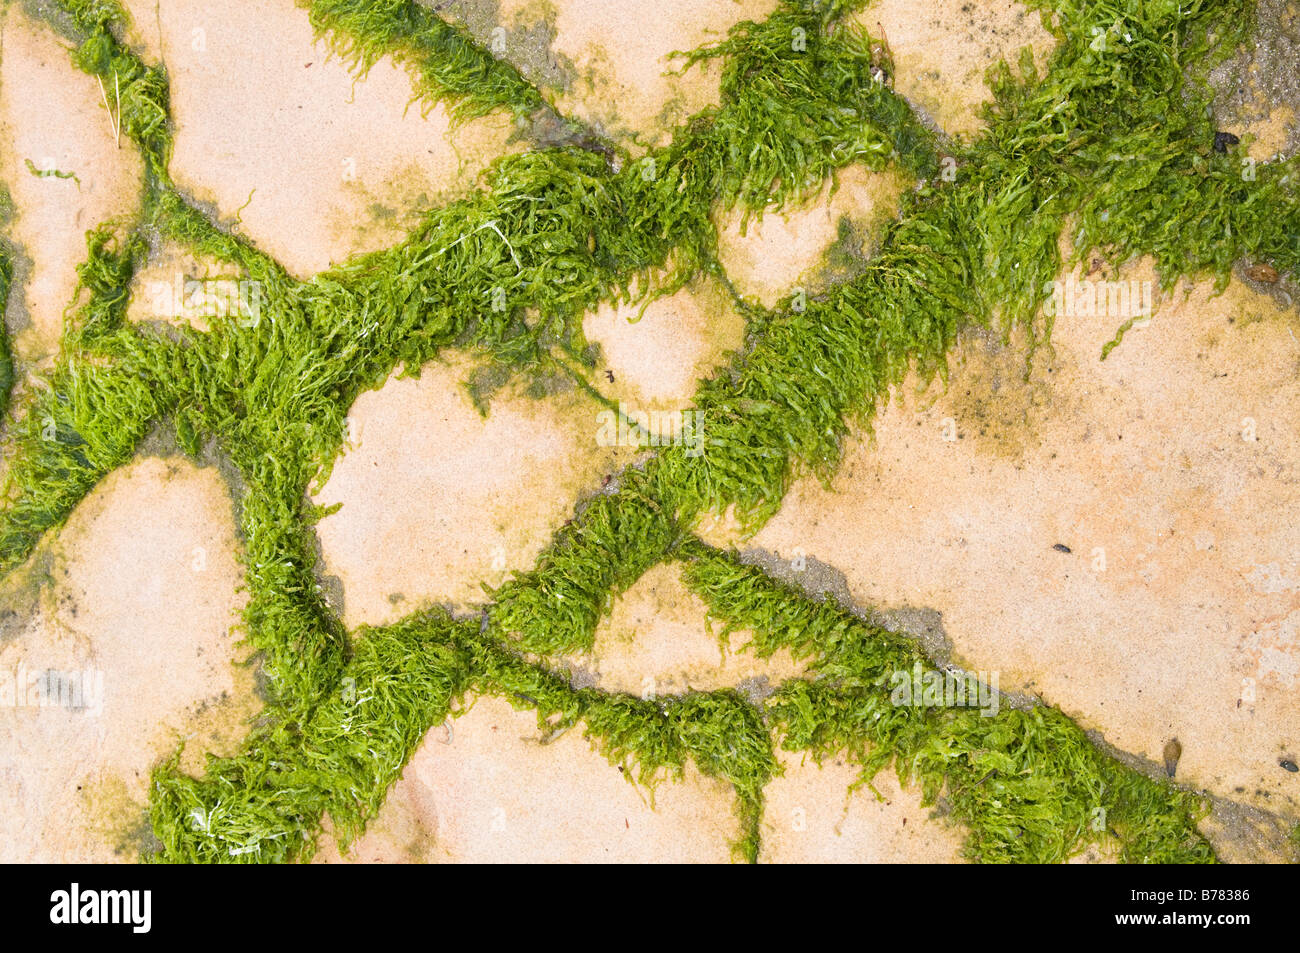 Alga verde formando un disegno geometrico sulle rocce Foto Stock